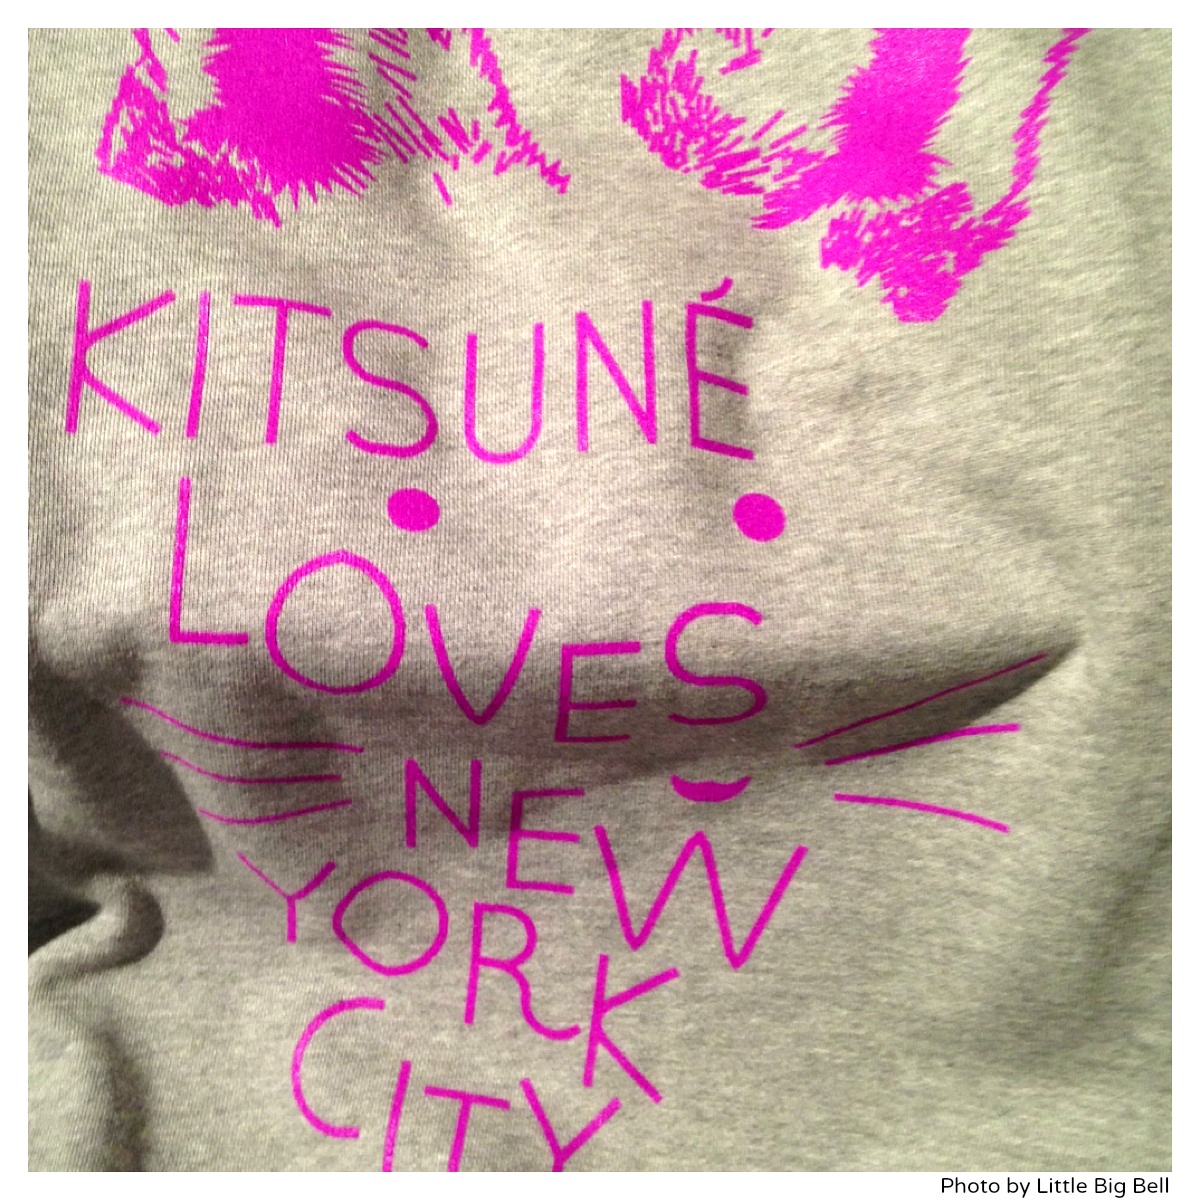 Kitsune-loves-new-york